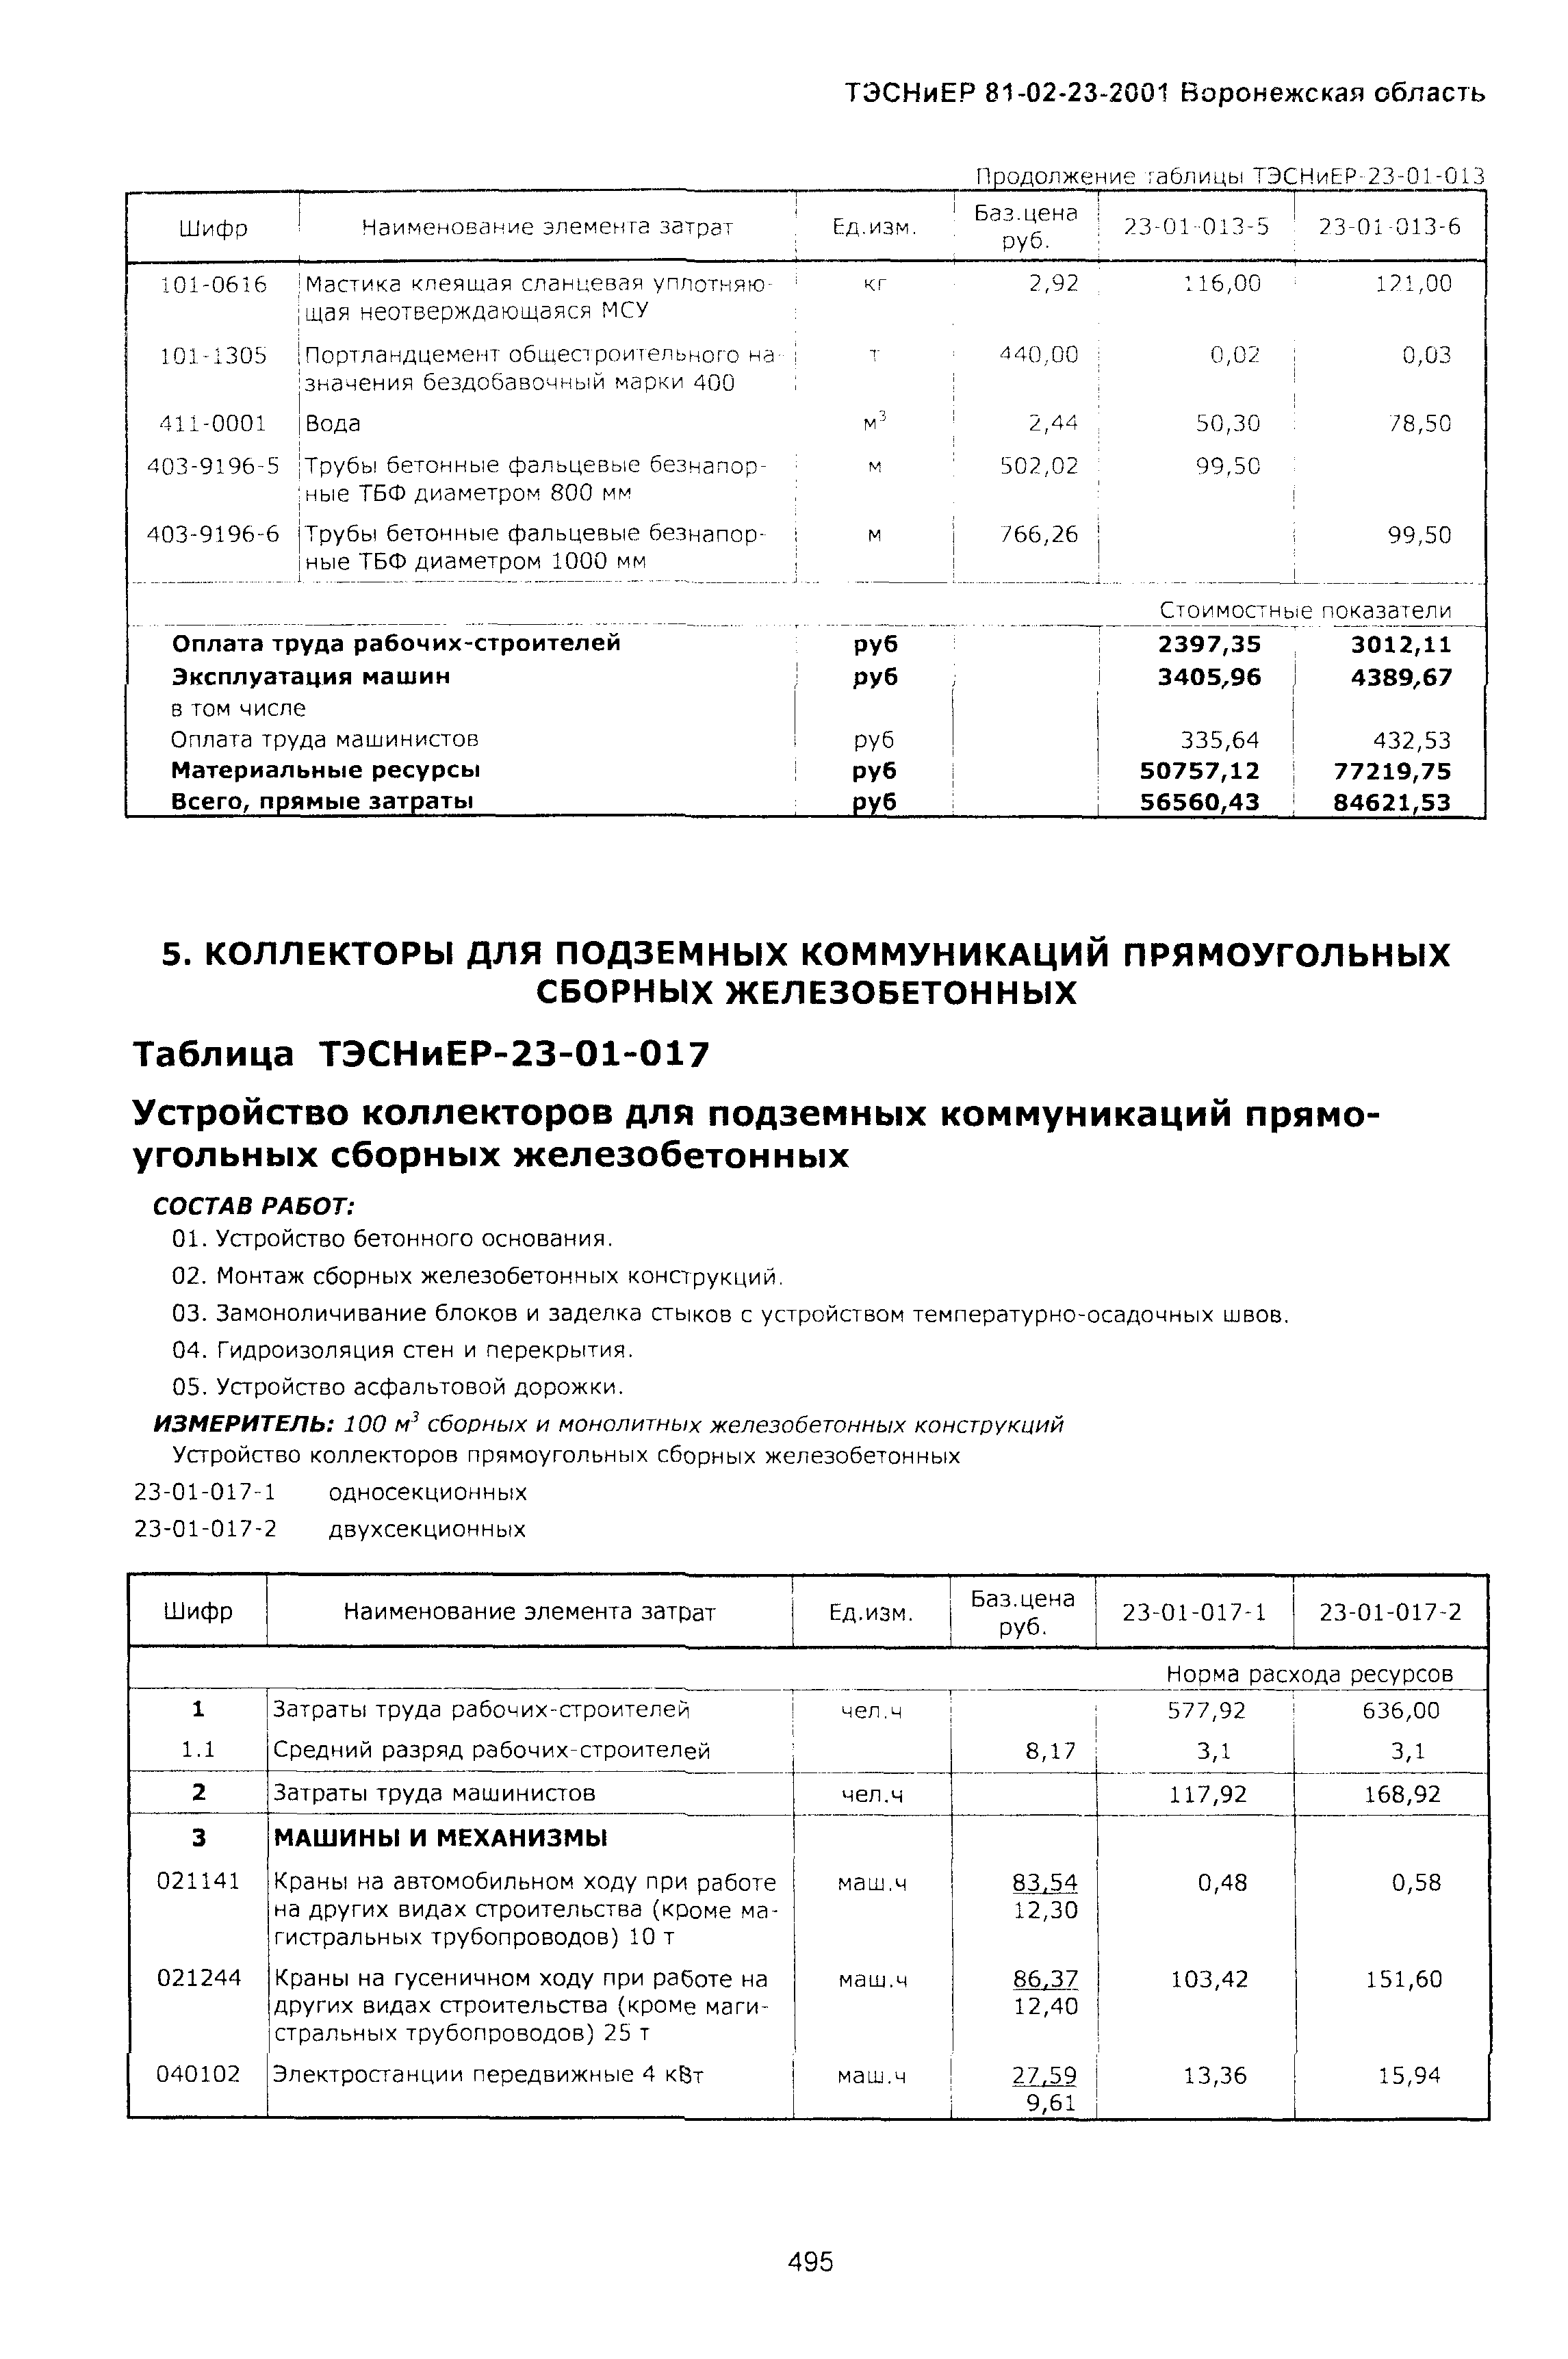 ТЭСНиЕР Воронежская область 81-02-23-2001